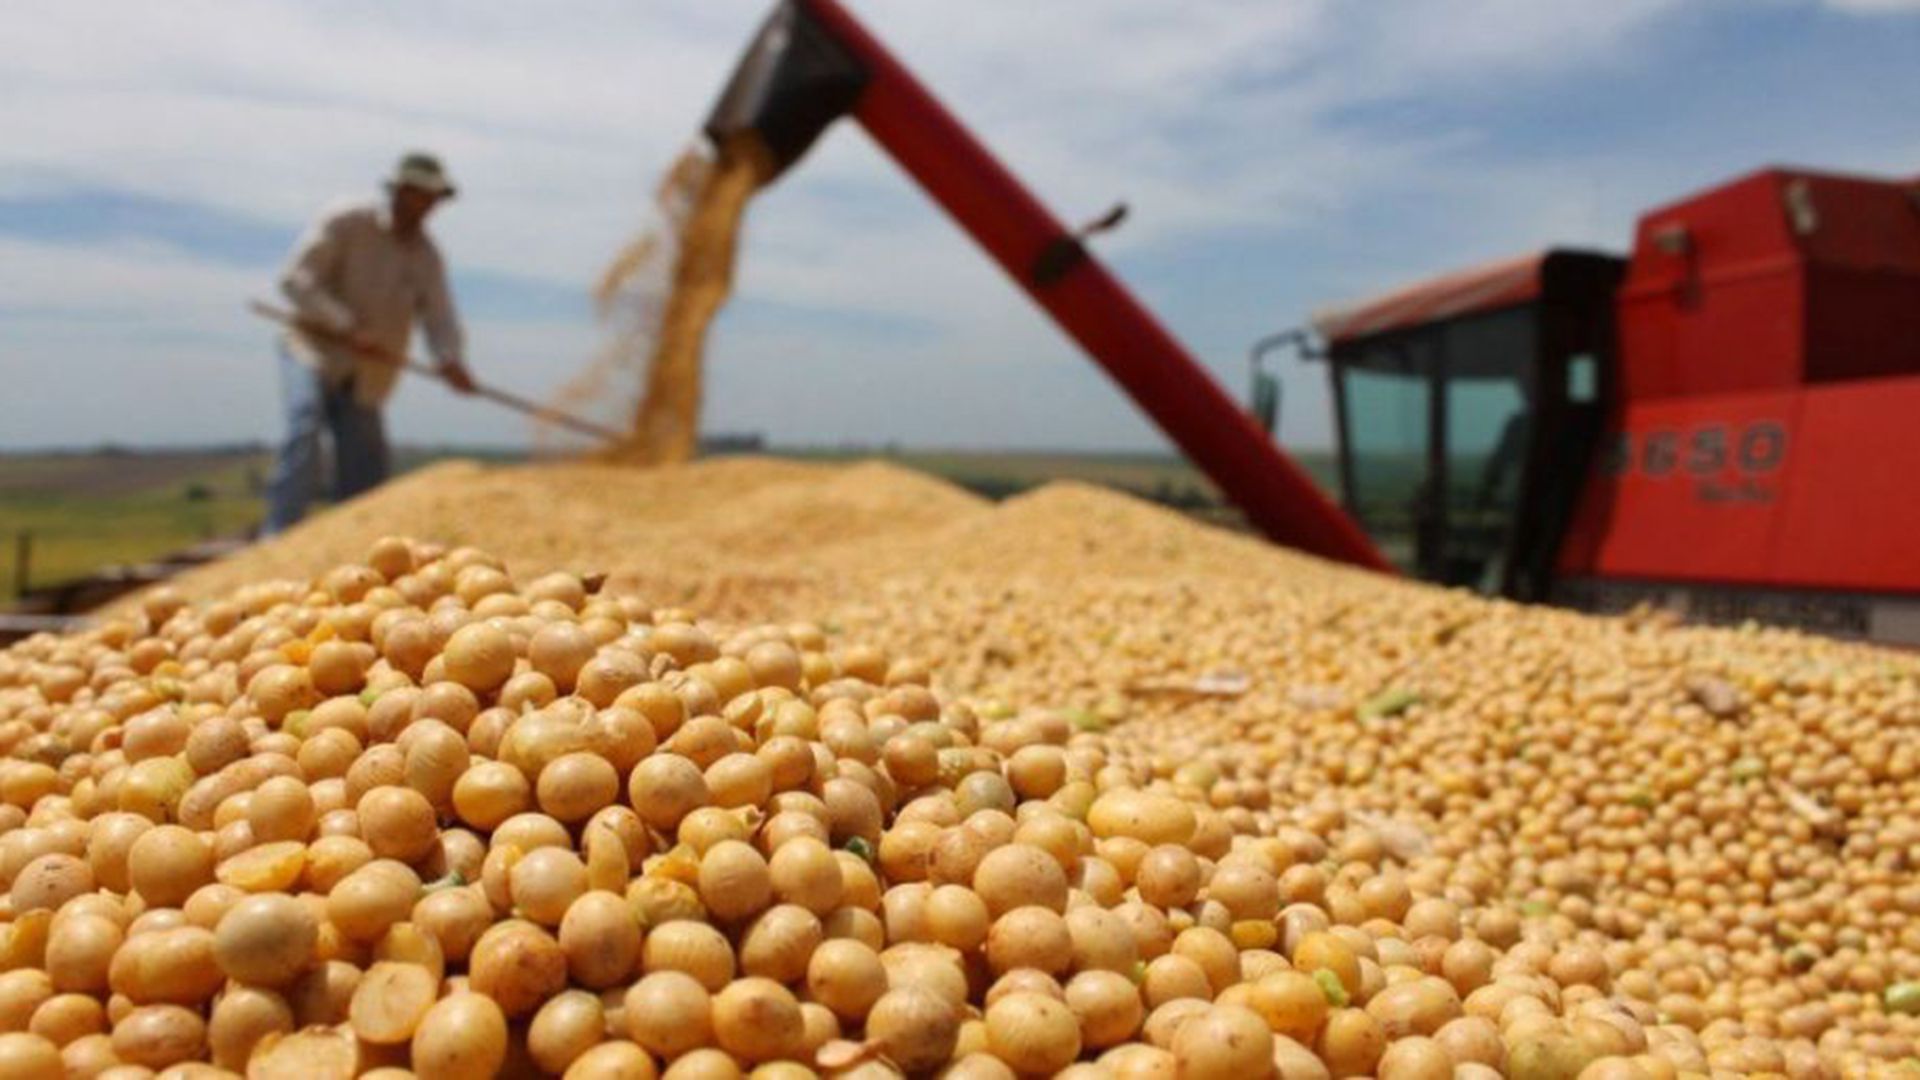 Los productores de soja pagarán 3 puntos porcentuales más de retenciones, que subirán del 30% al 33%